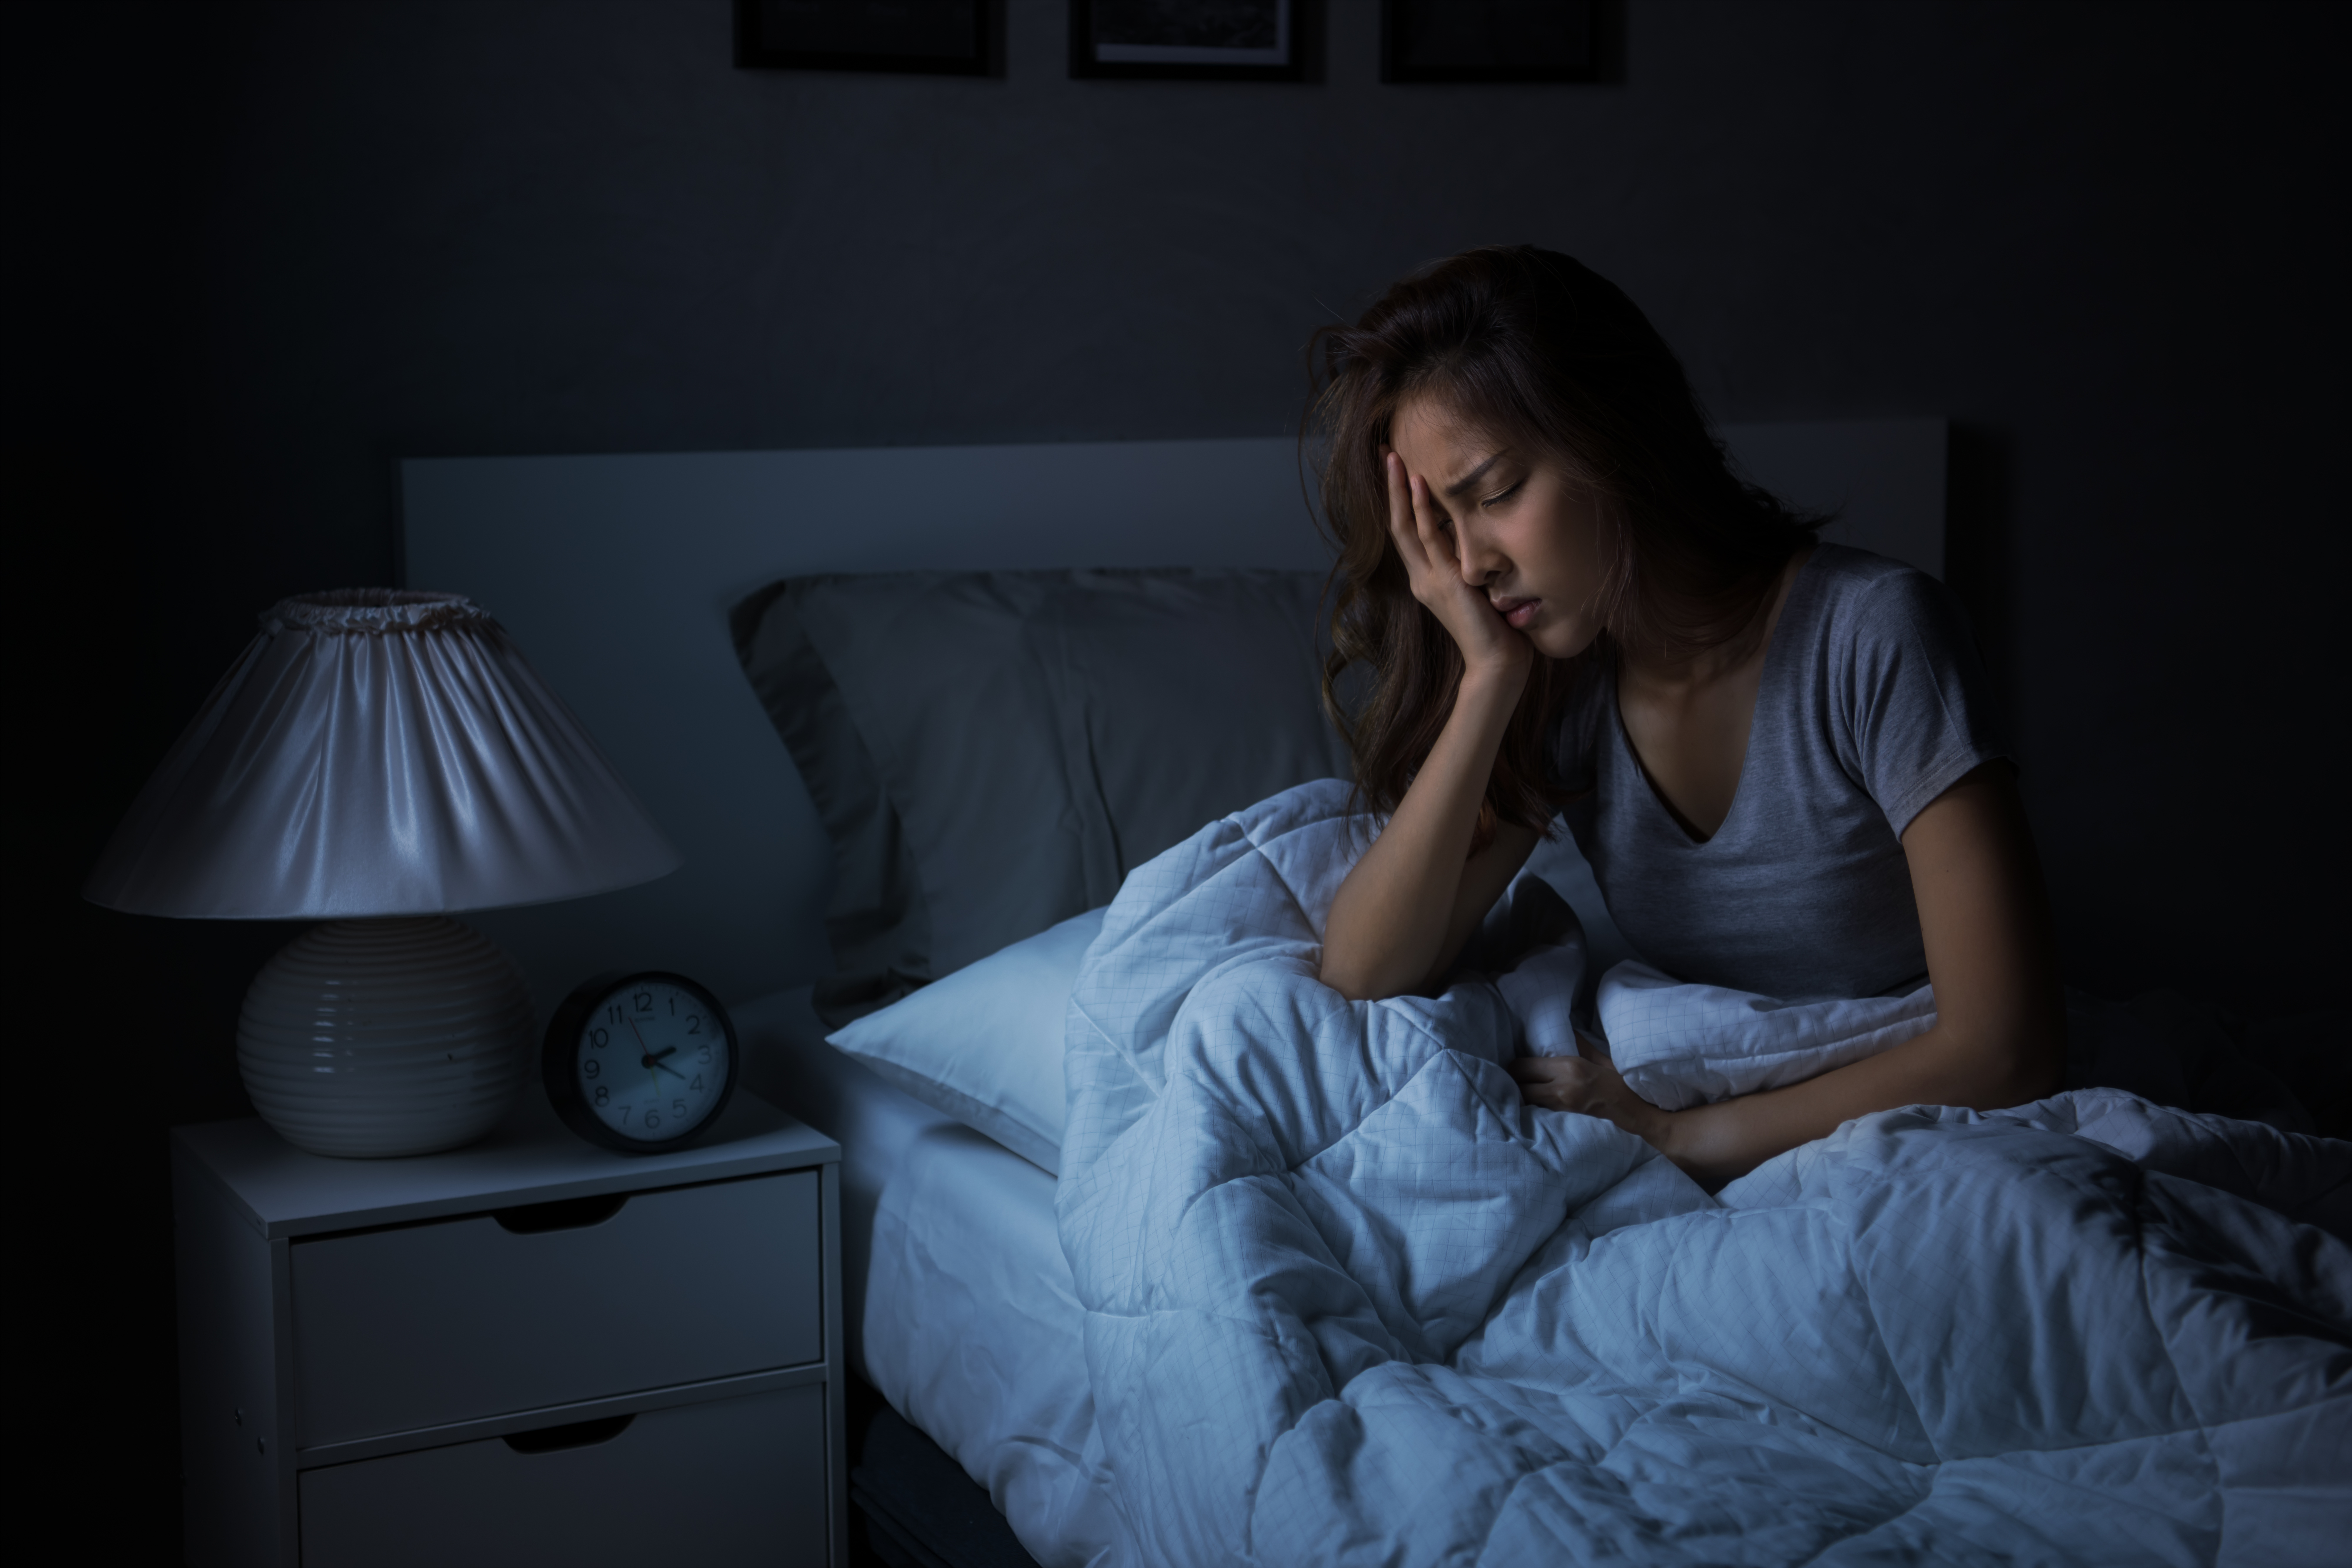 Joven deprimida sentada en la cama sin poder dormir por insomnio. | Fuente: Shutterstock